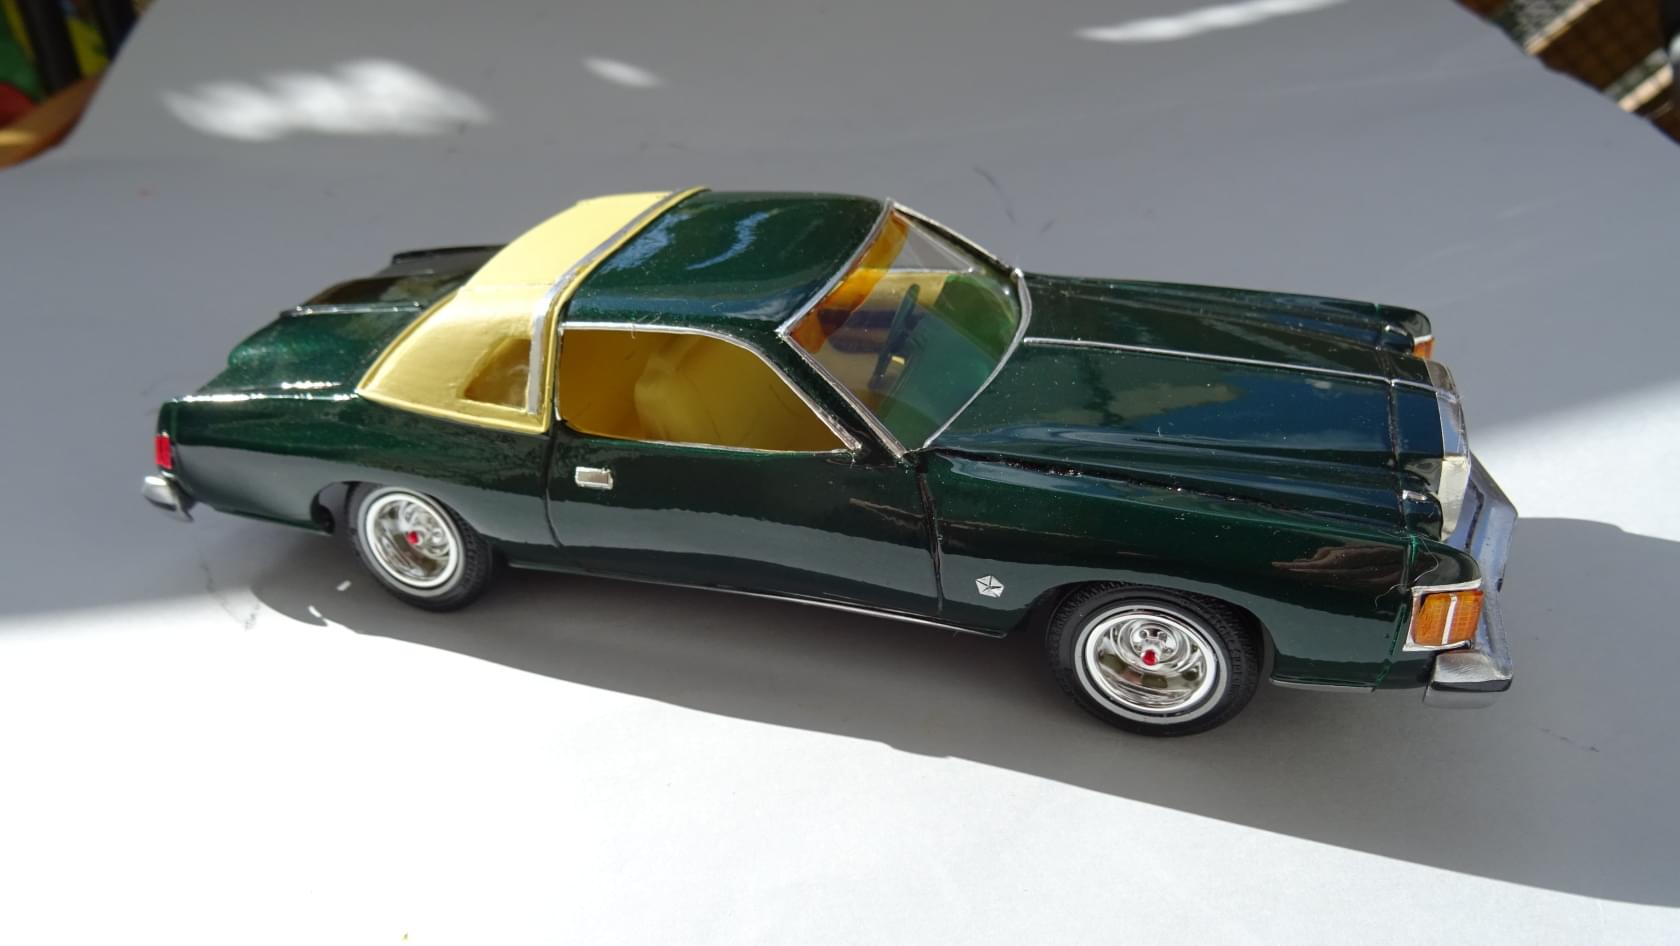 78 Chrysler Cordoba - Model Cars - Model Cars Magazine Forum